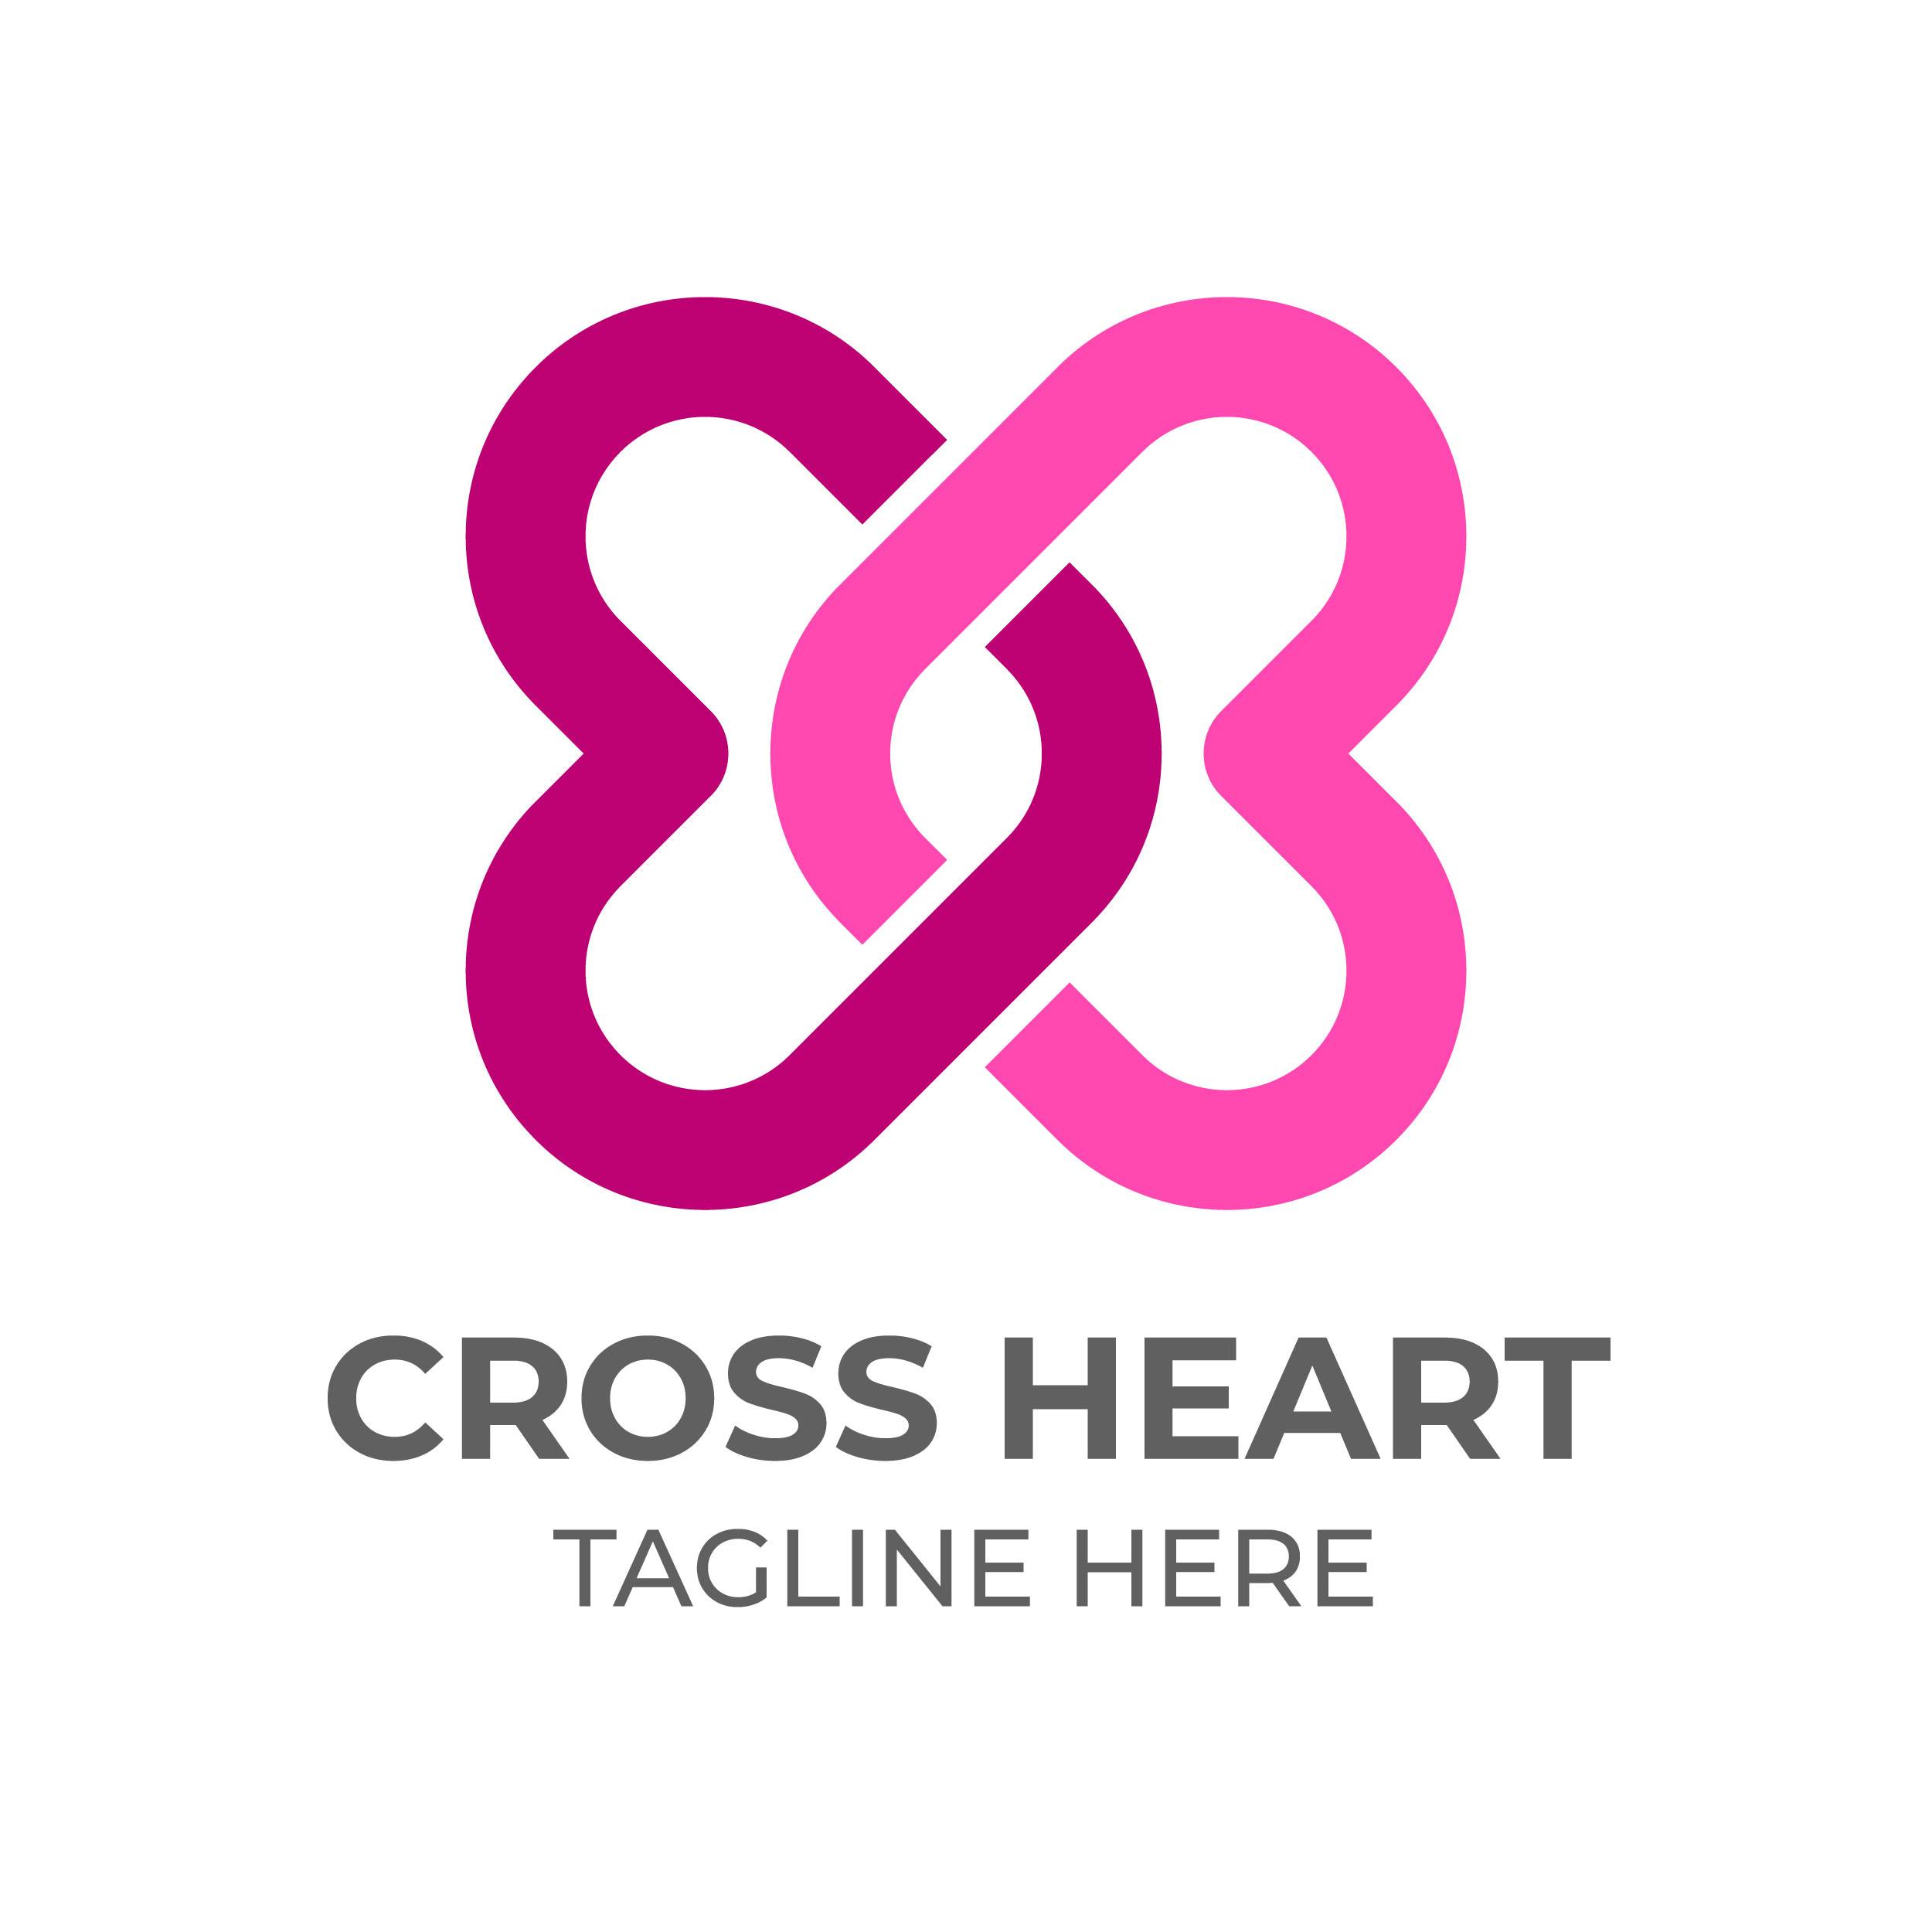 Logo in heart shape in feminine colors